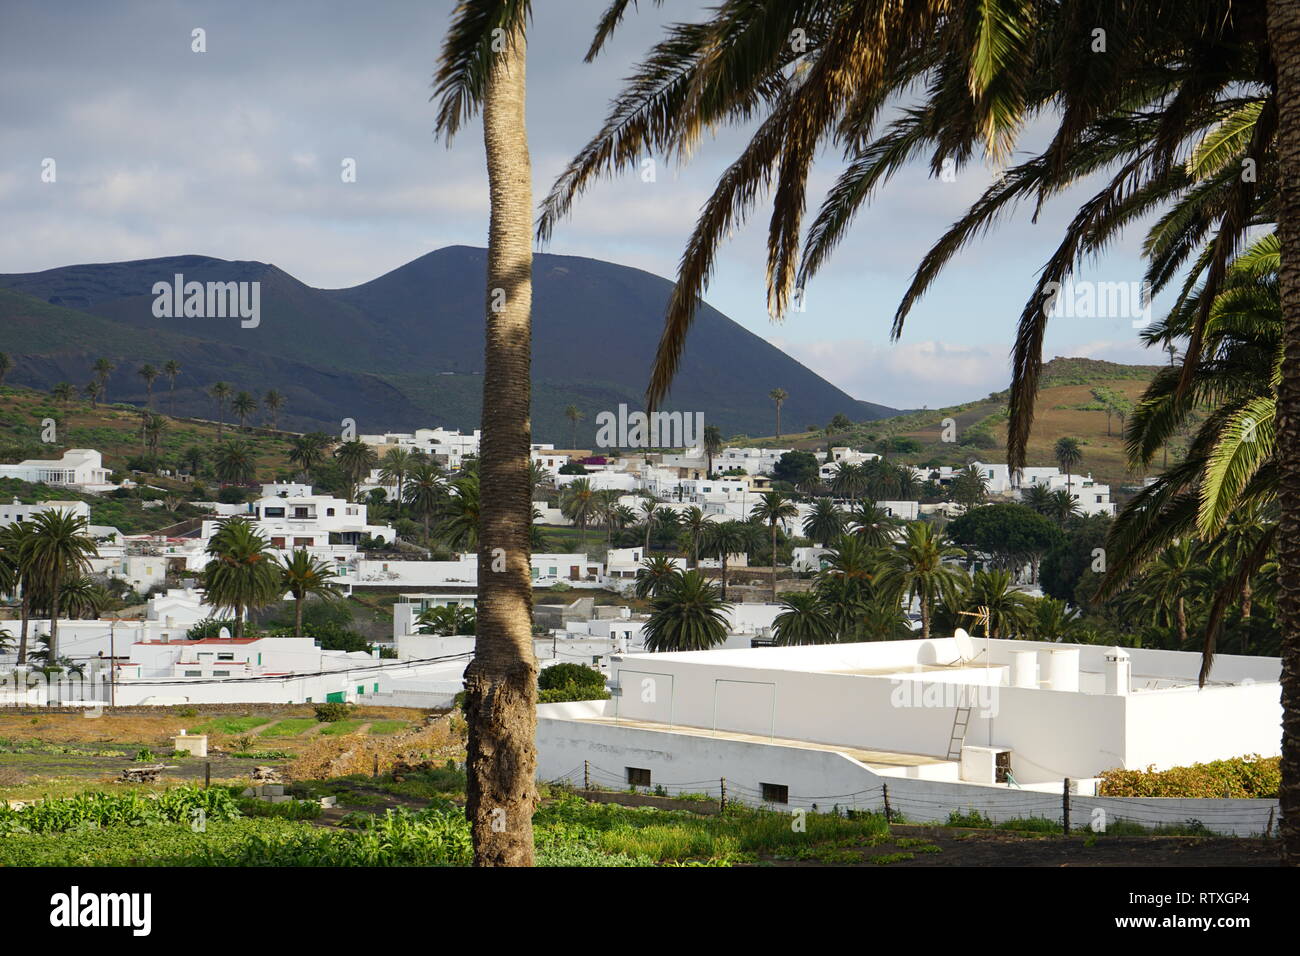 Haria, Stadt auf Lanzarote, Kanarische Inseln, Spanien Stock Photo